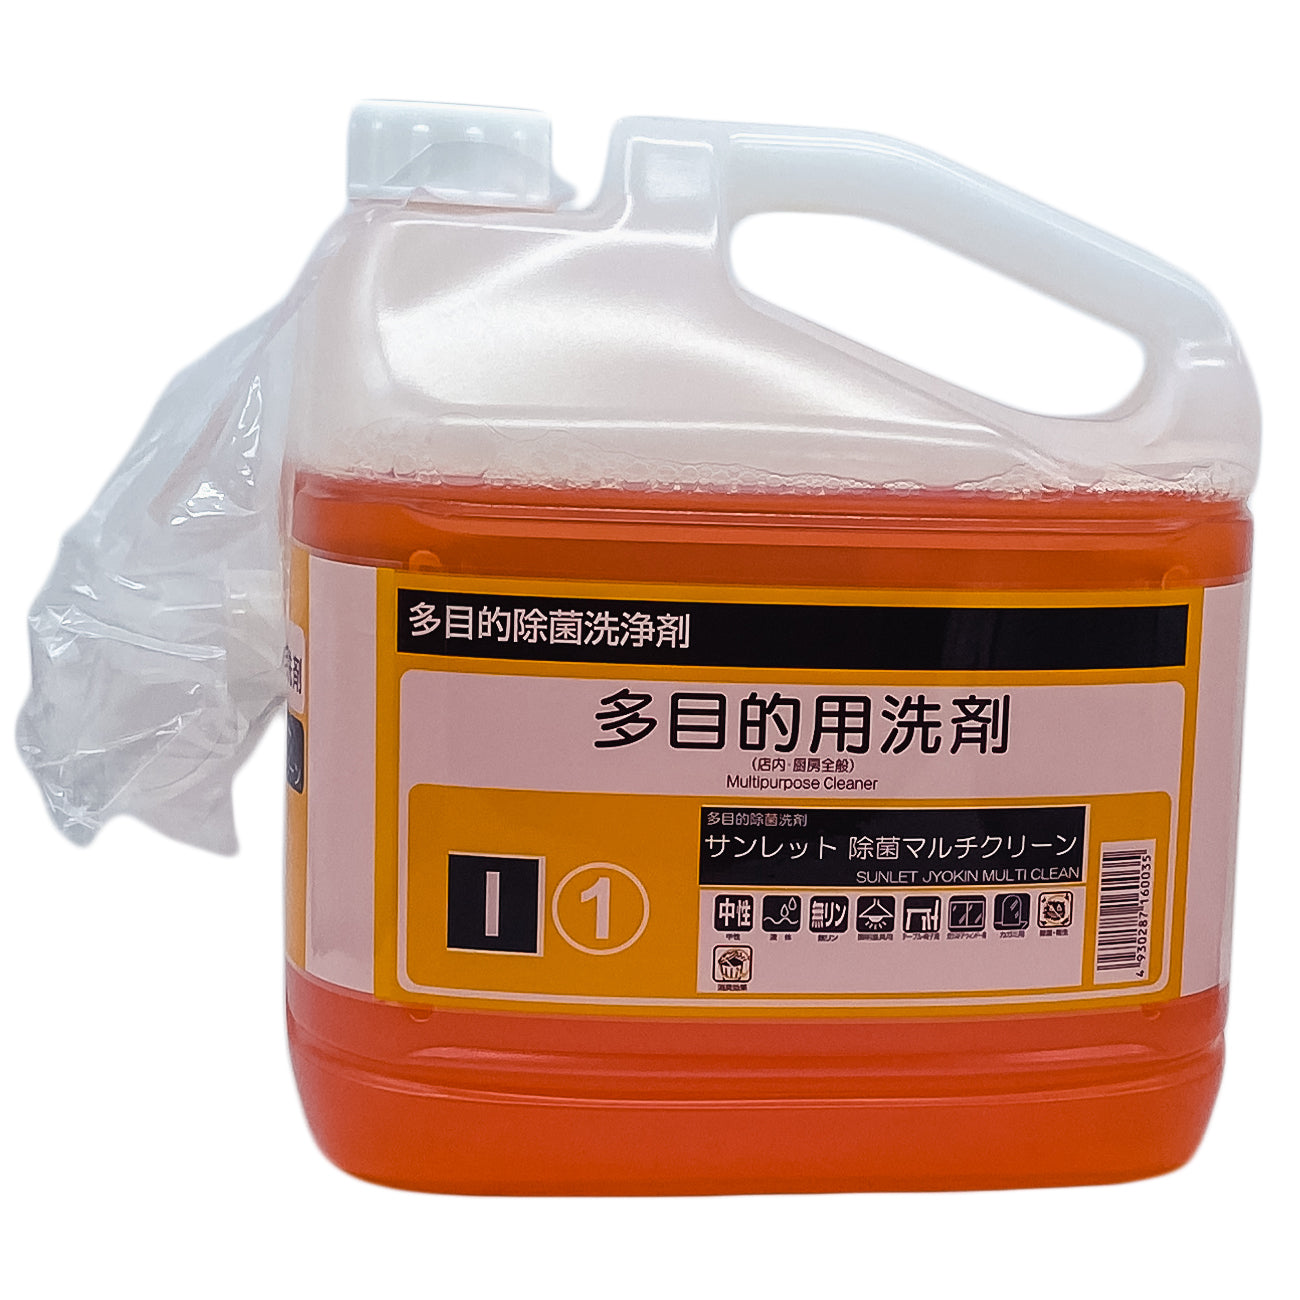 【多目的除菌中性洗剤】ケース販売 静光産業 サンレット 除菌マルチクリーン 4.5kg 4個セット